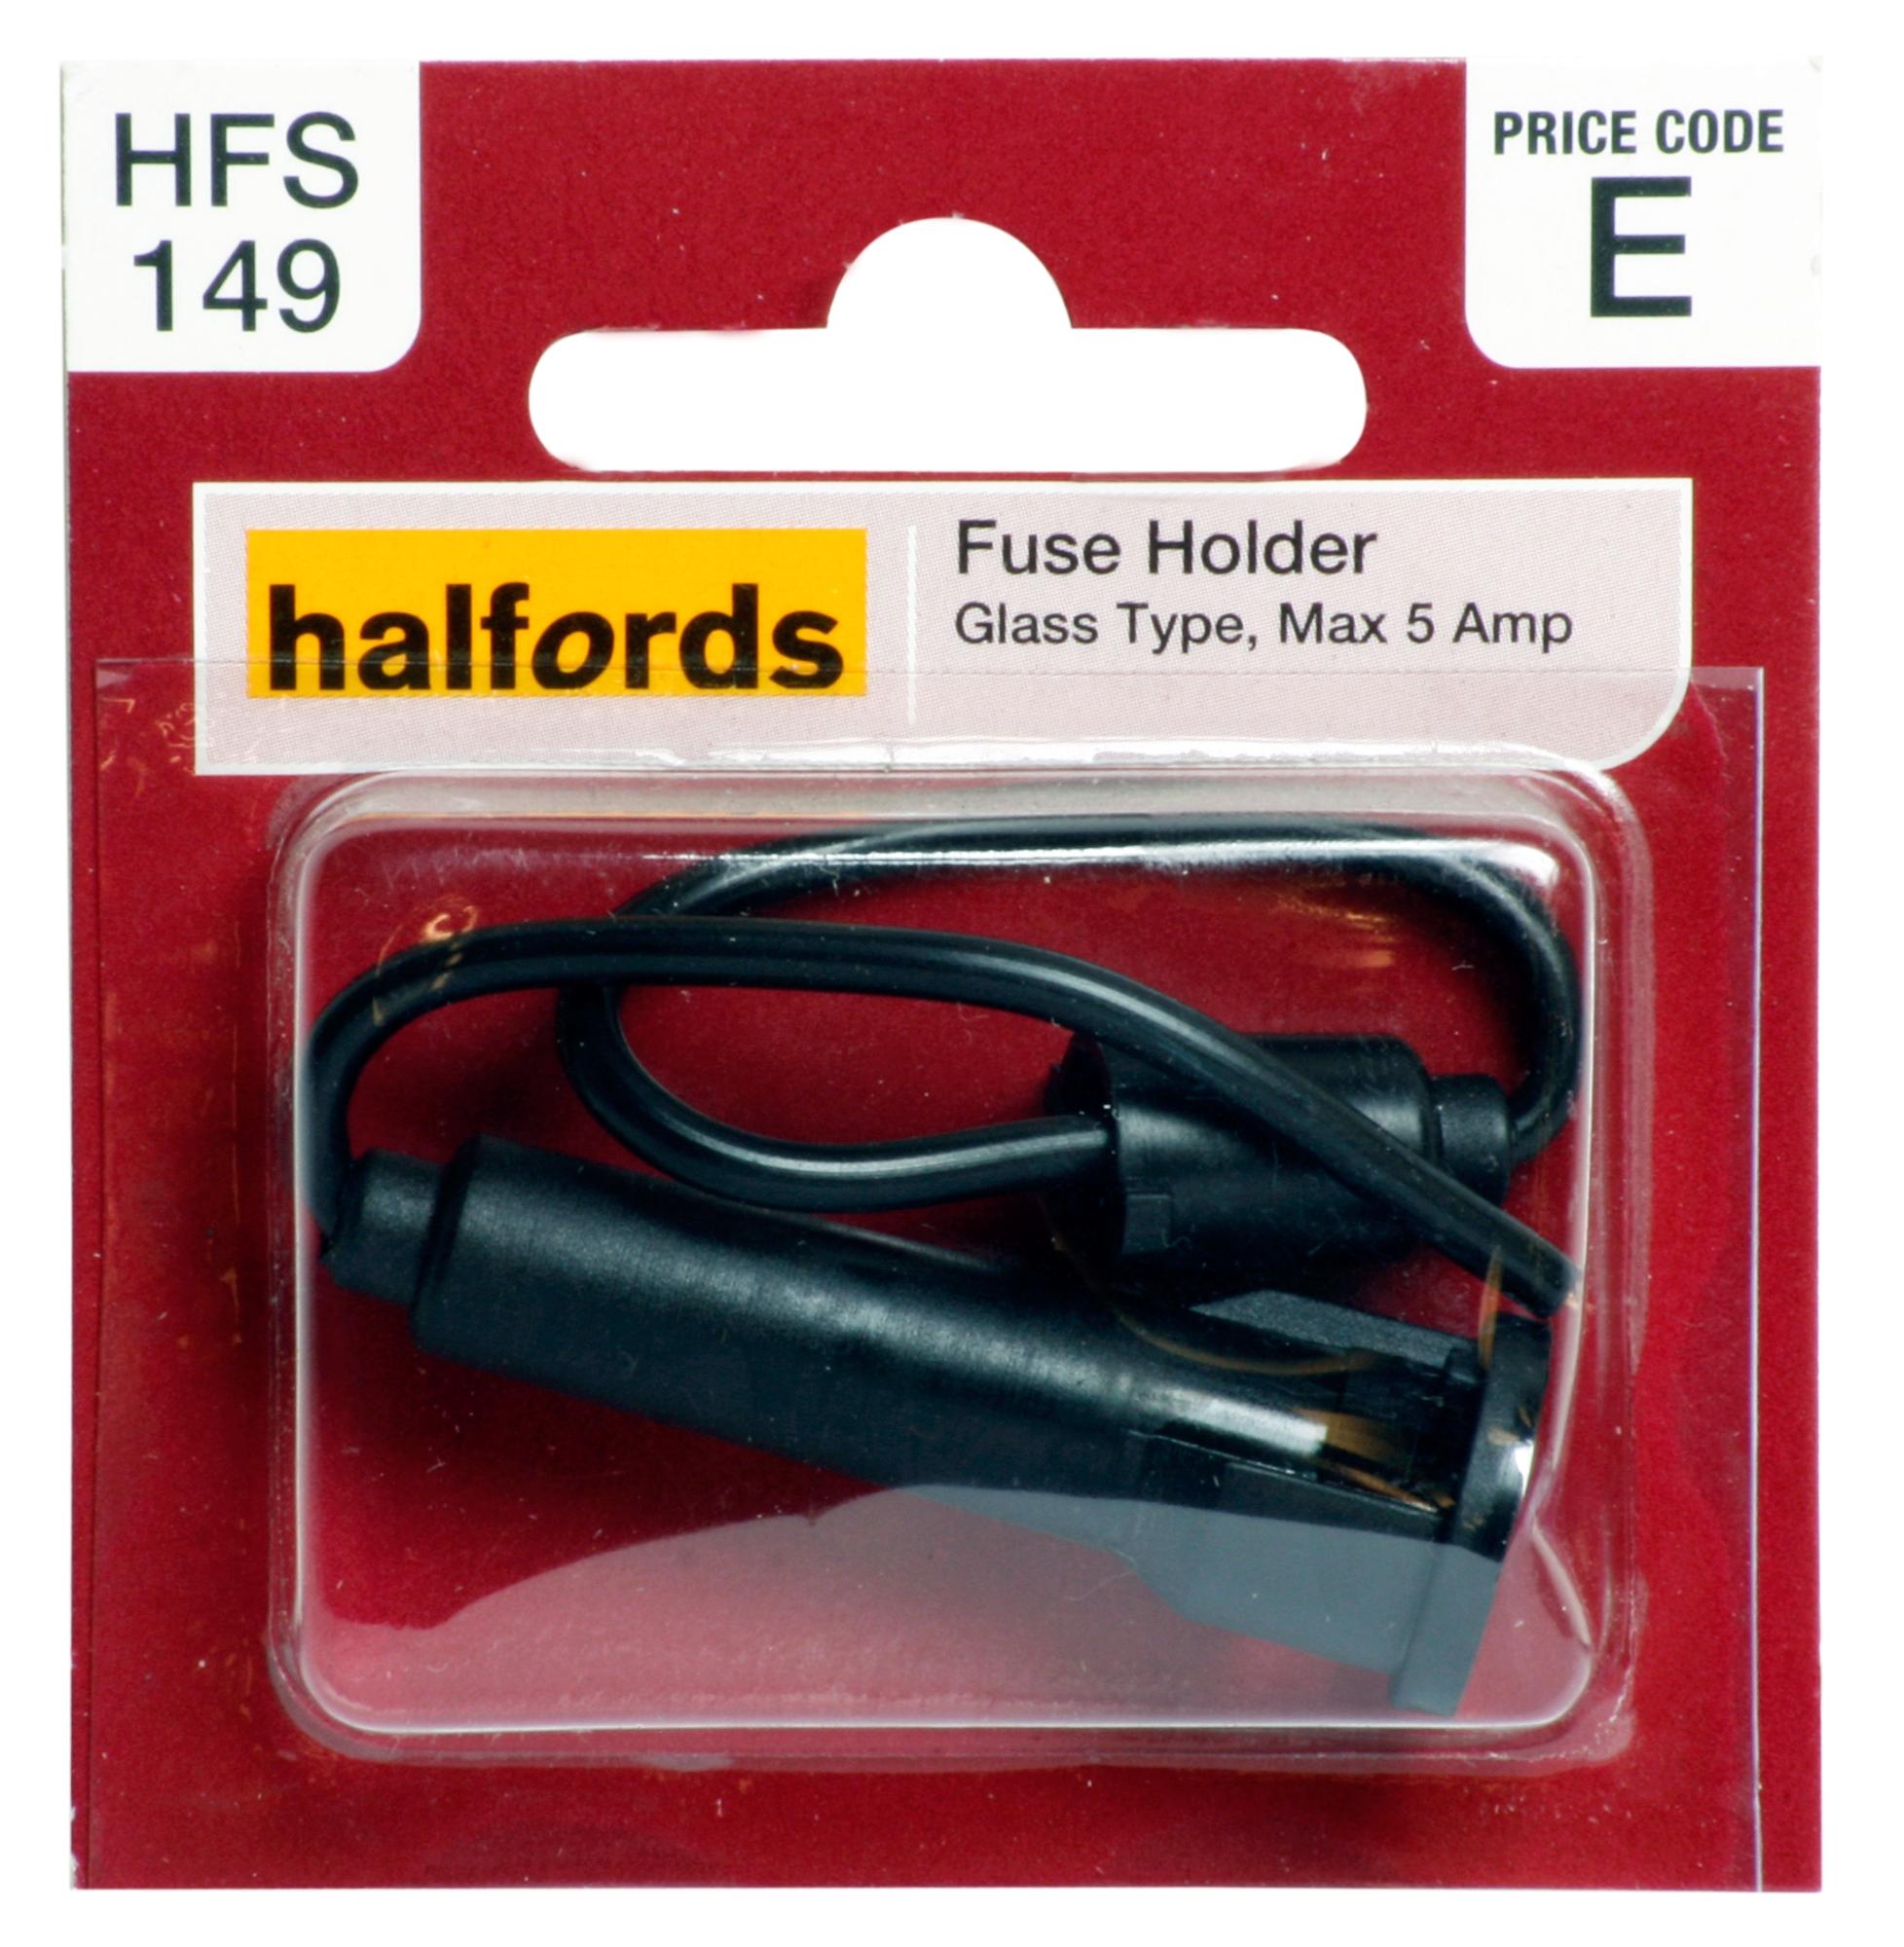 Halfords Fuse Holder (Hfs149)